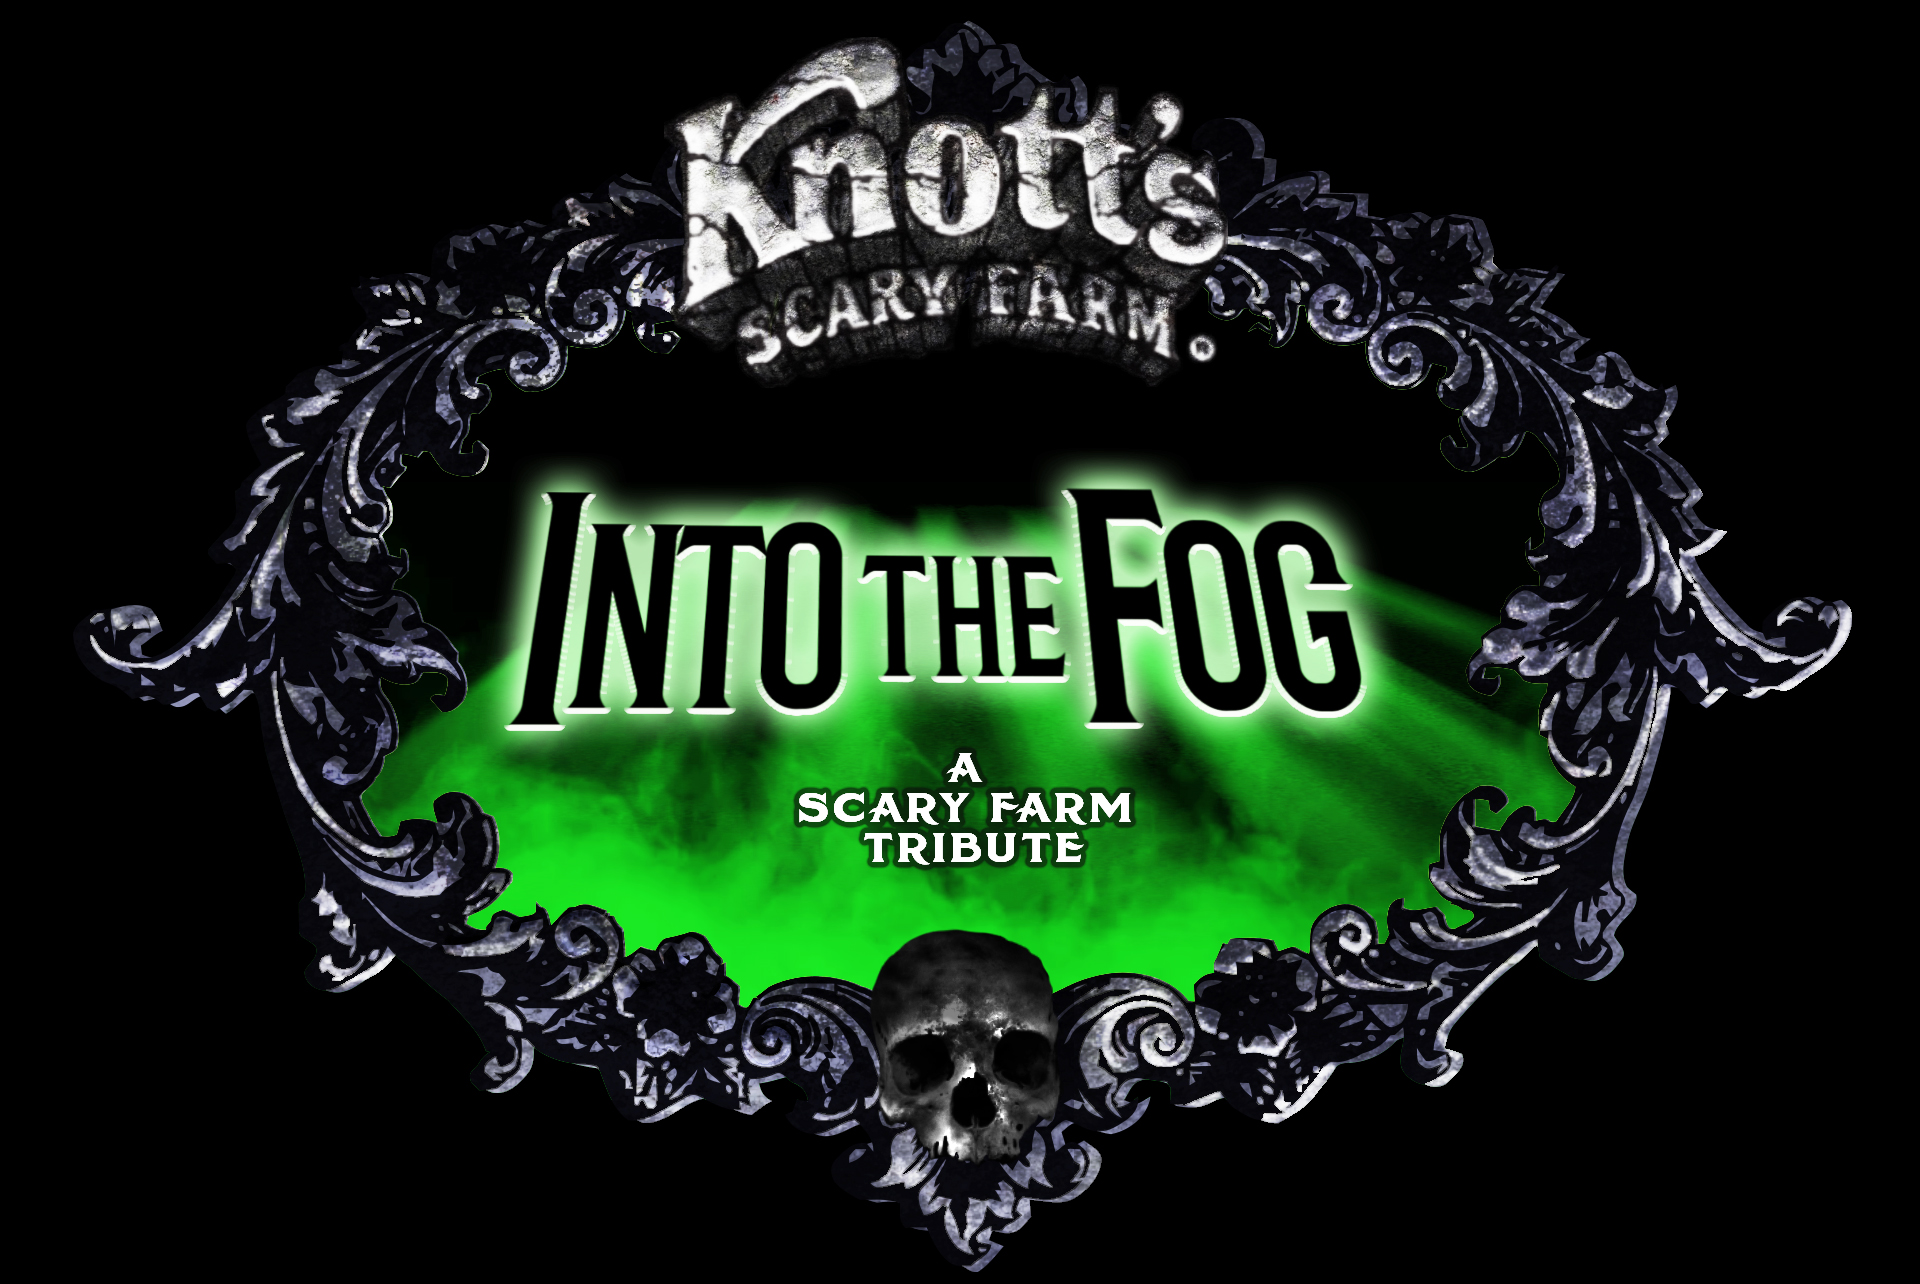  Logo courtesy of Knott’s Berry Farm. 